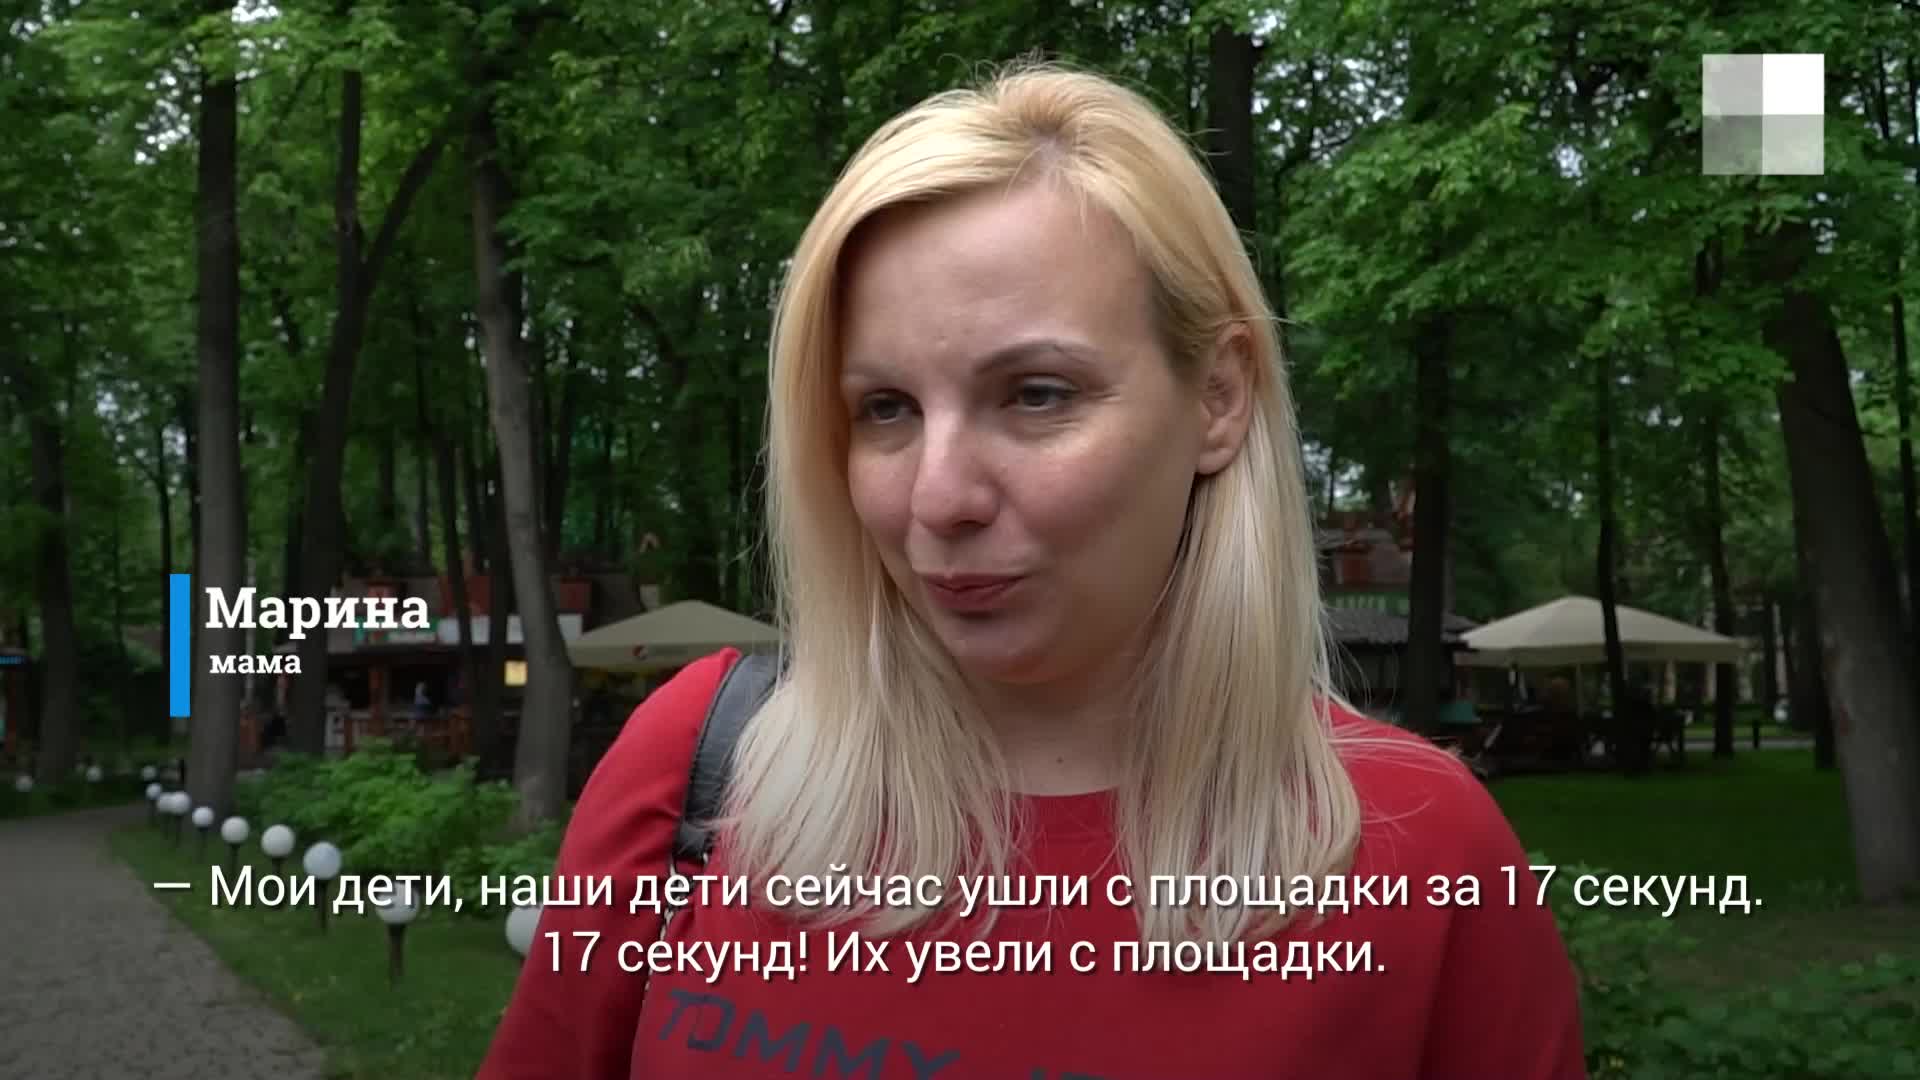 «ЛизаАлерт» провел социальный эксперимент, как увести детей из парка 25 мая  2021 г - 26 мая 2021 - 59.ru